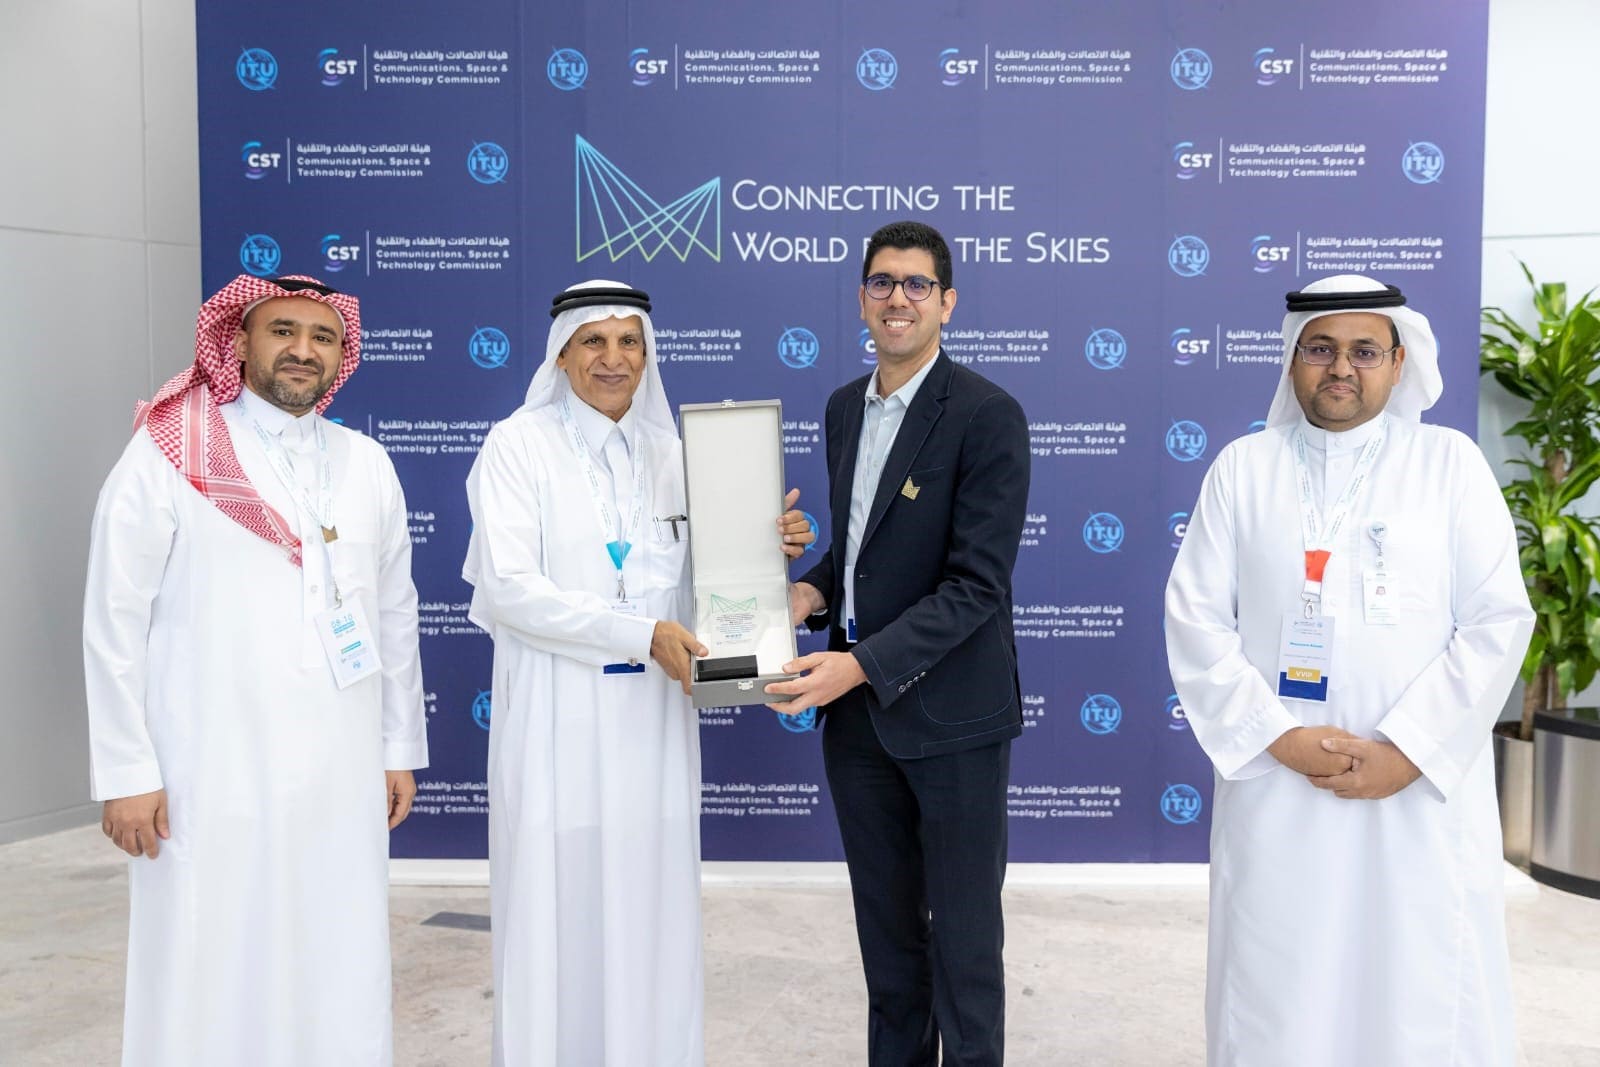 Le professeur de Wael Jaafar, à qui on remet le premier prix de la compétition de l'IEEE, avec des représentants de la Commission des communications, de l'espace et des technologies d'Arabie saoudite.